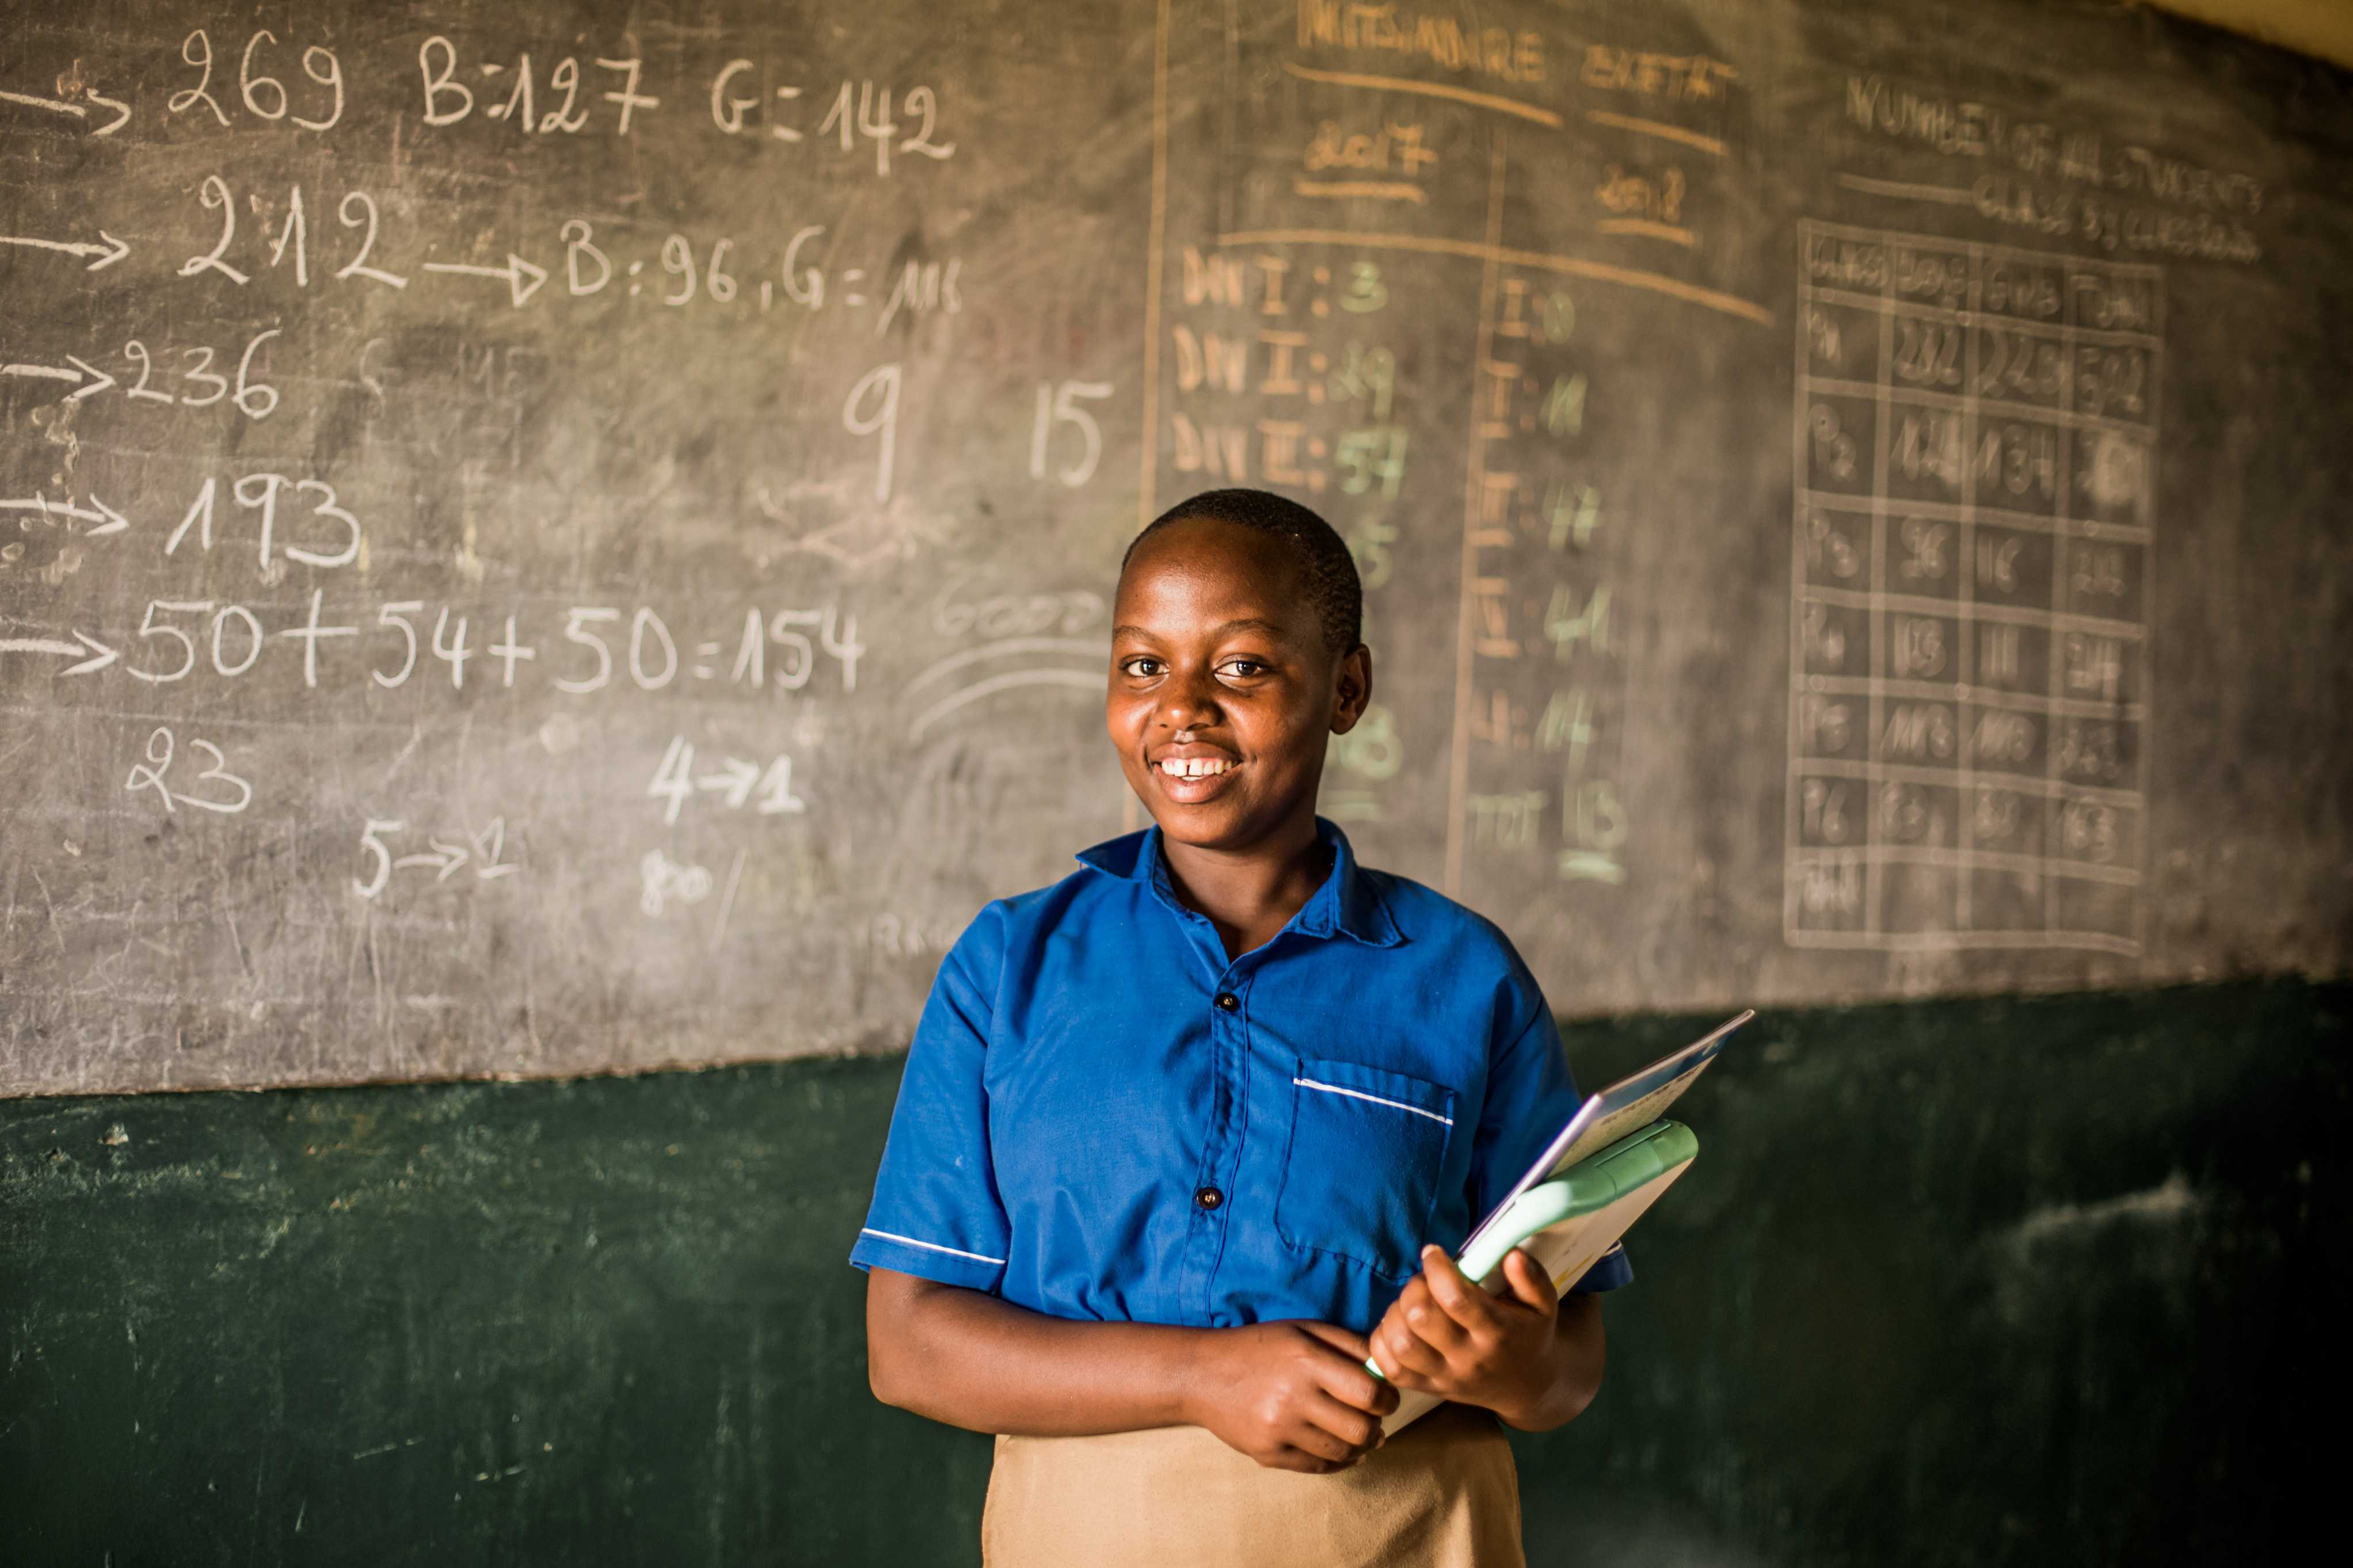 Ecolière au Rwanda sourit à la caméra devant le tableau de classe, un cahier à la main.